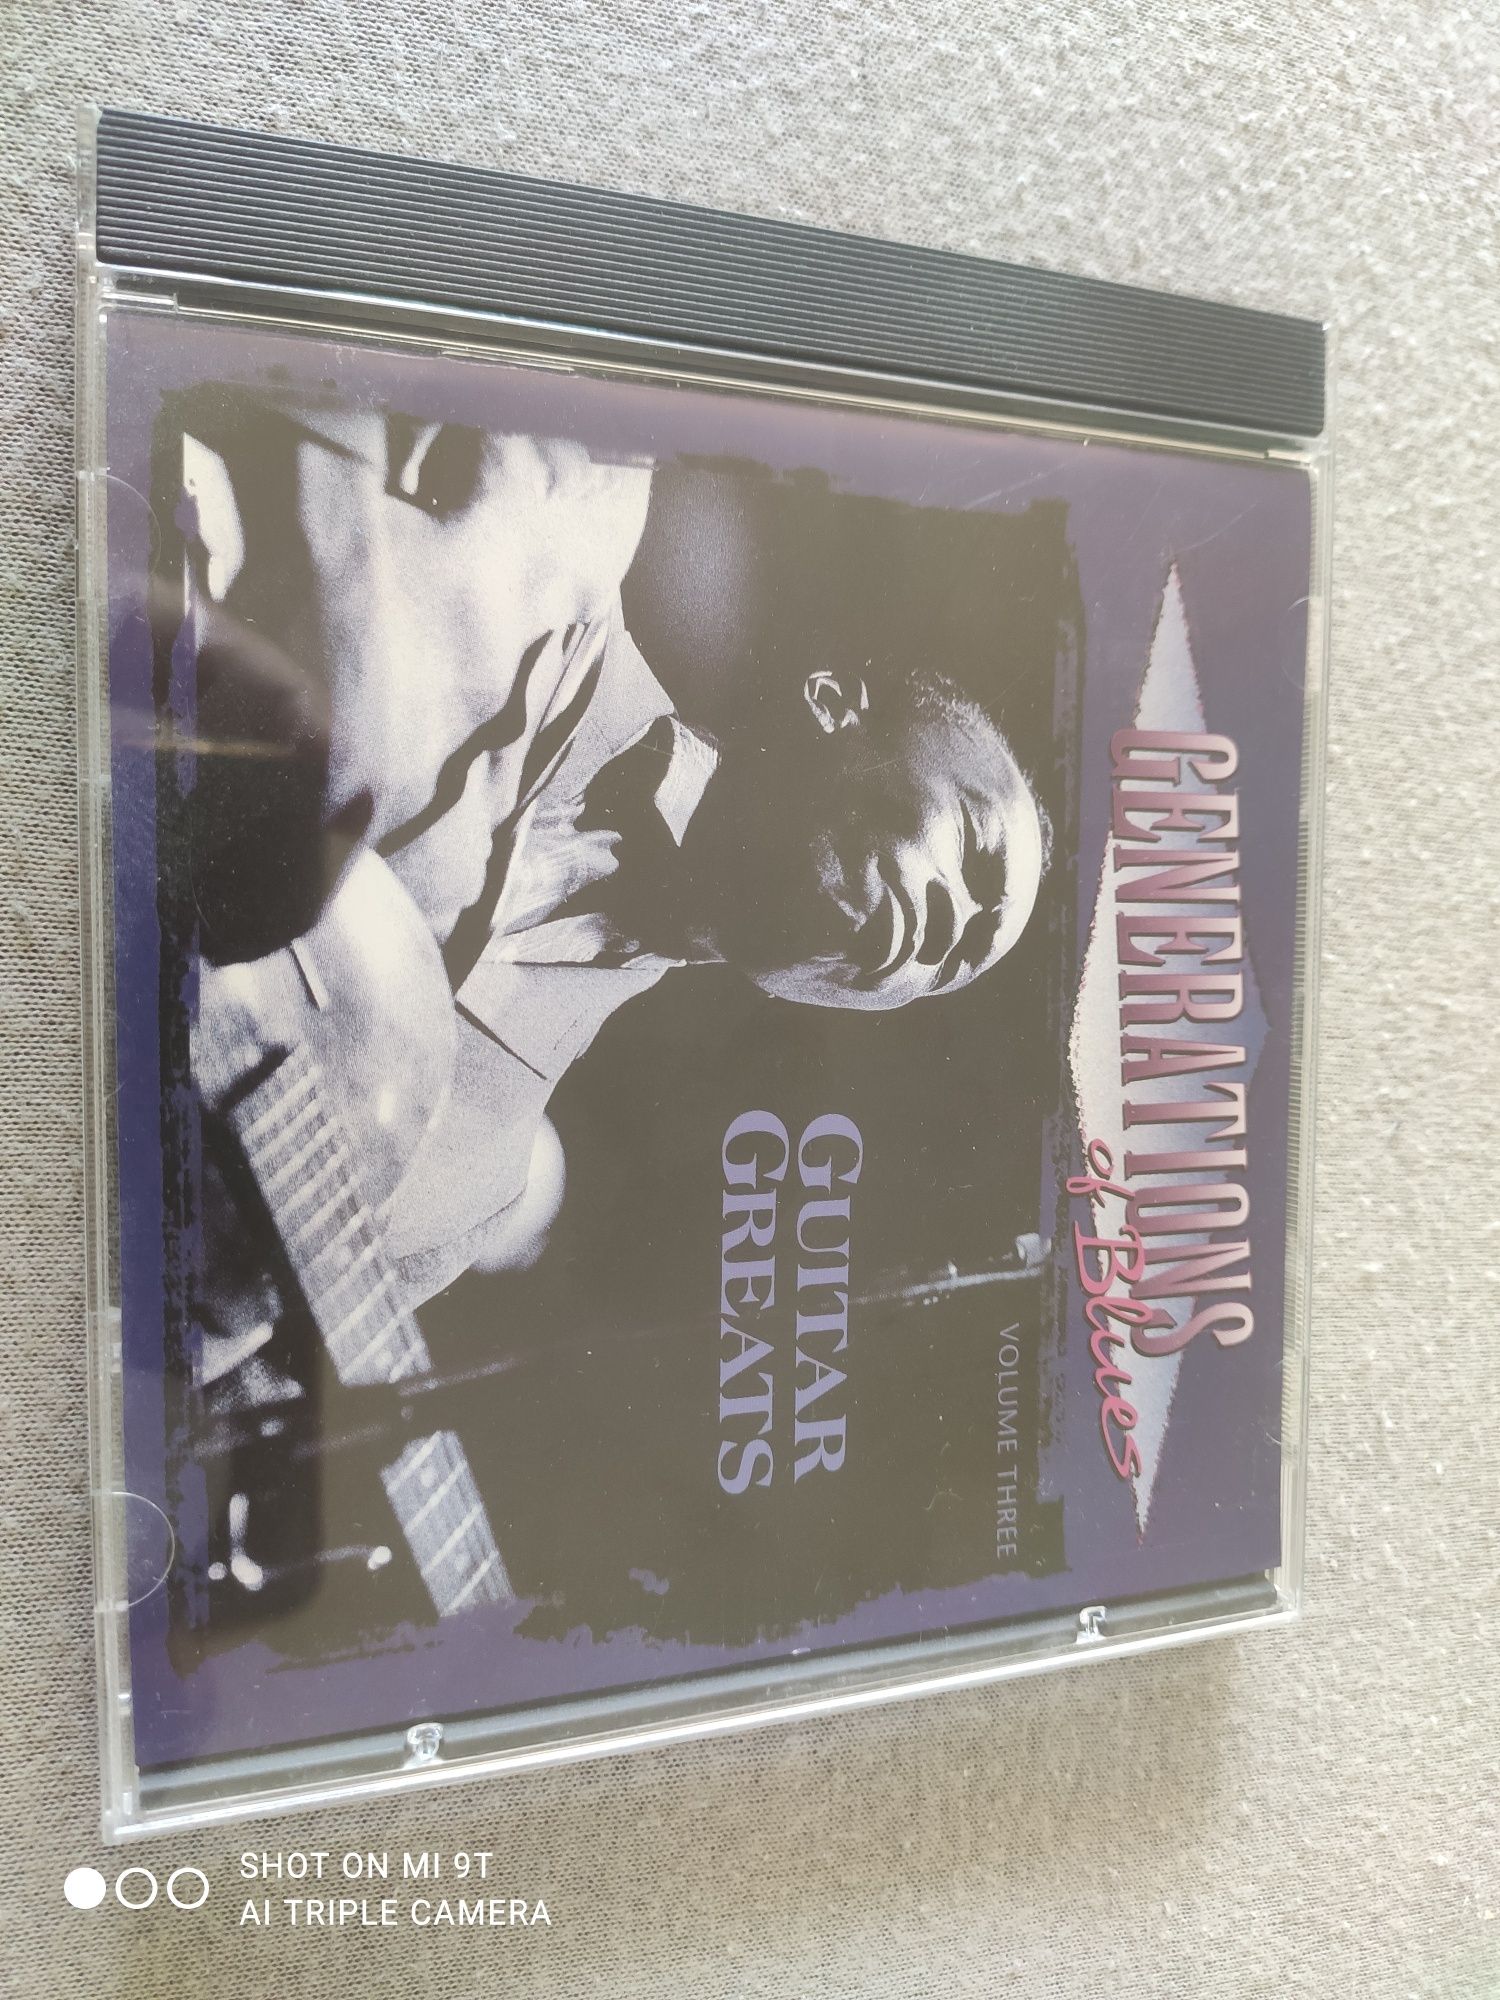 Generations of blues płyta CD